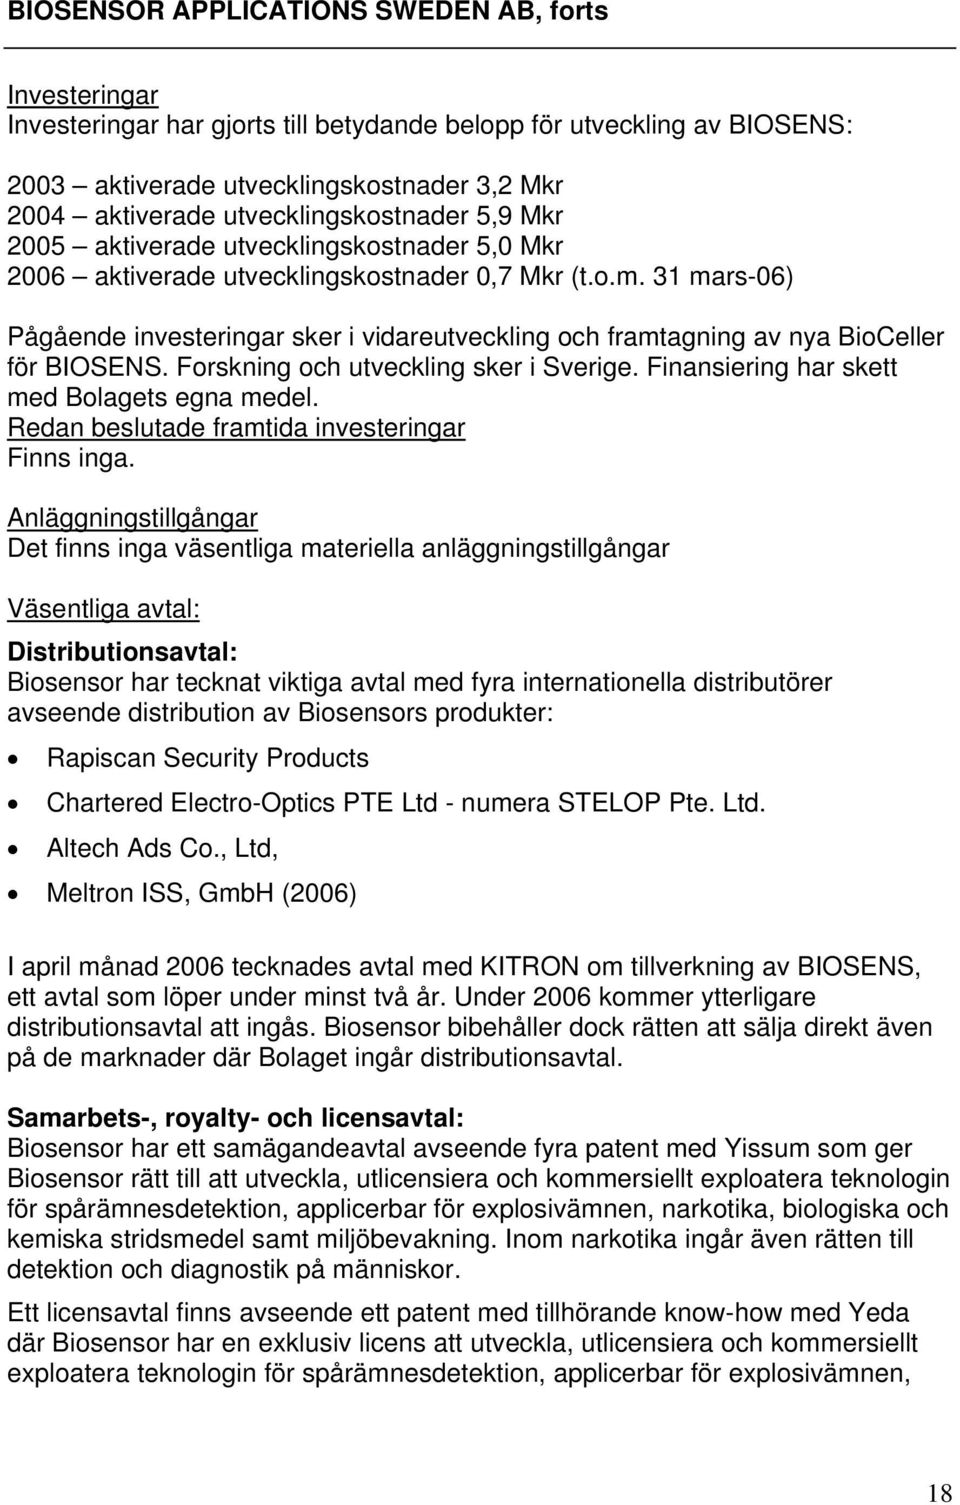 31 mars-06) Pågående investeringar sker i vidareutveckling och framtagning av nya BioCeller för BIOSENS. Forskning och utveckling sker i Sverige. Finansiering har skett med Bolagets egna medel.